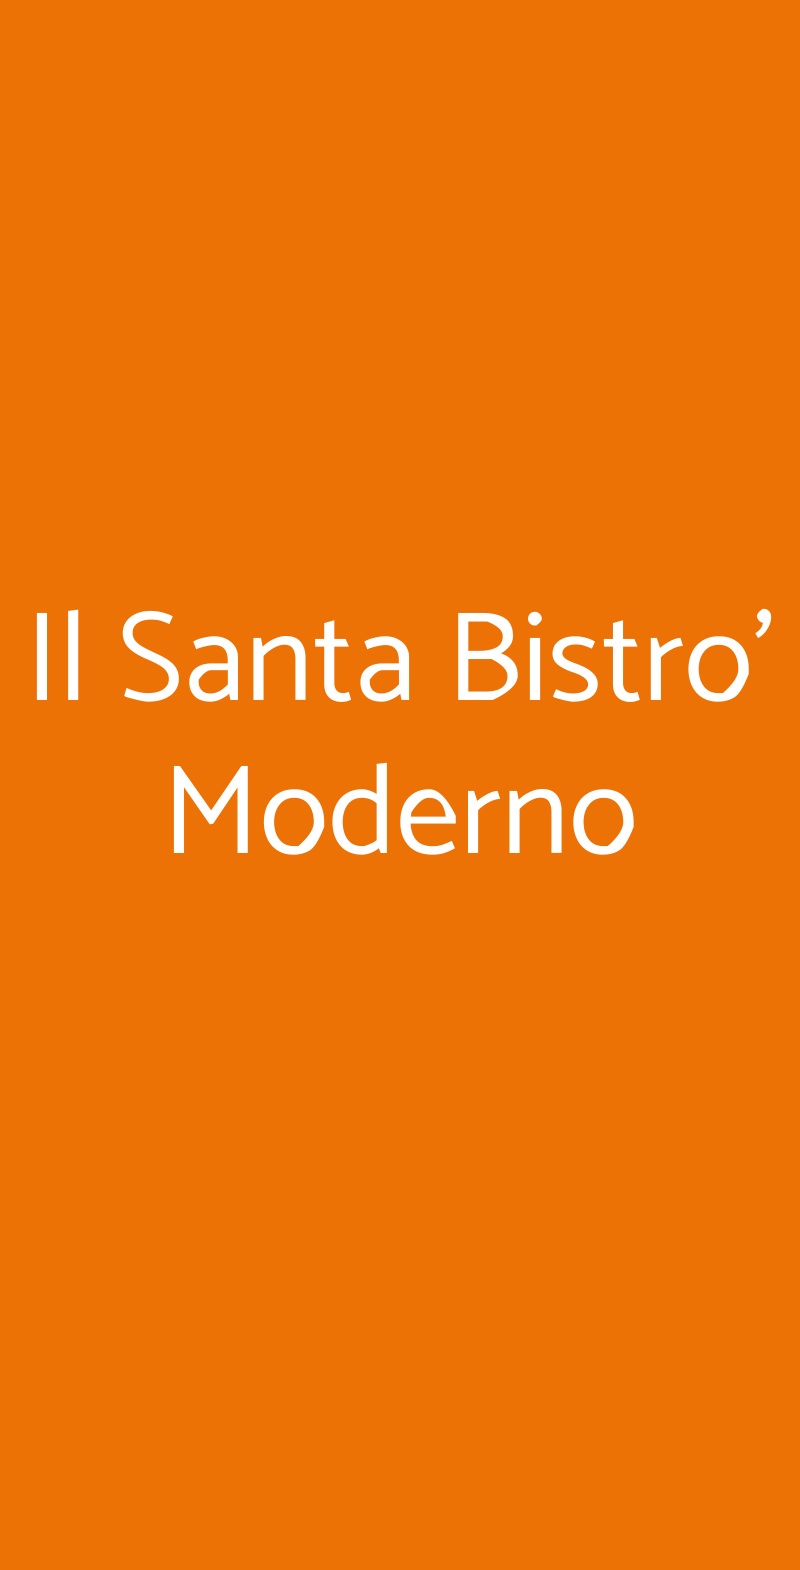 Il Santa Bistro' Moderno Milano menù 1 pagina